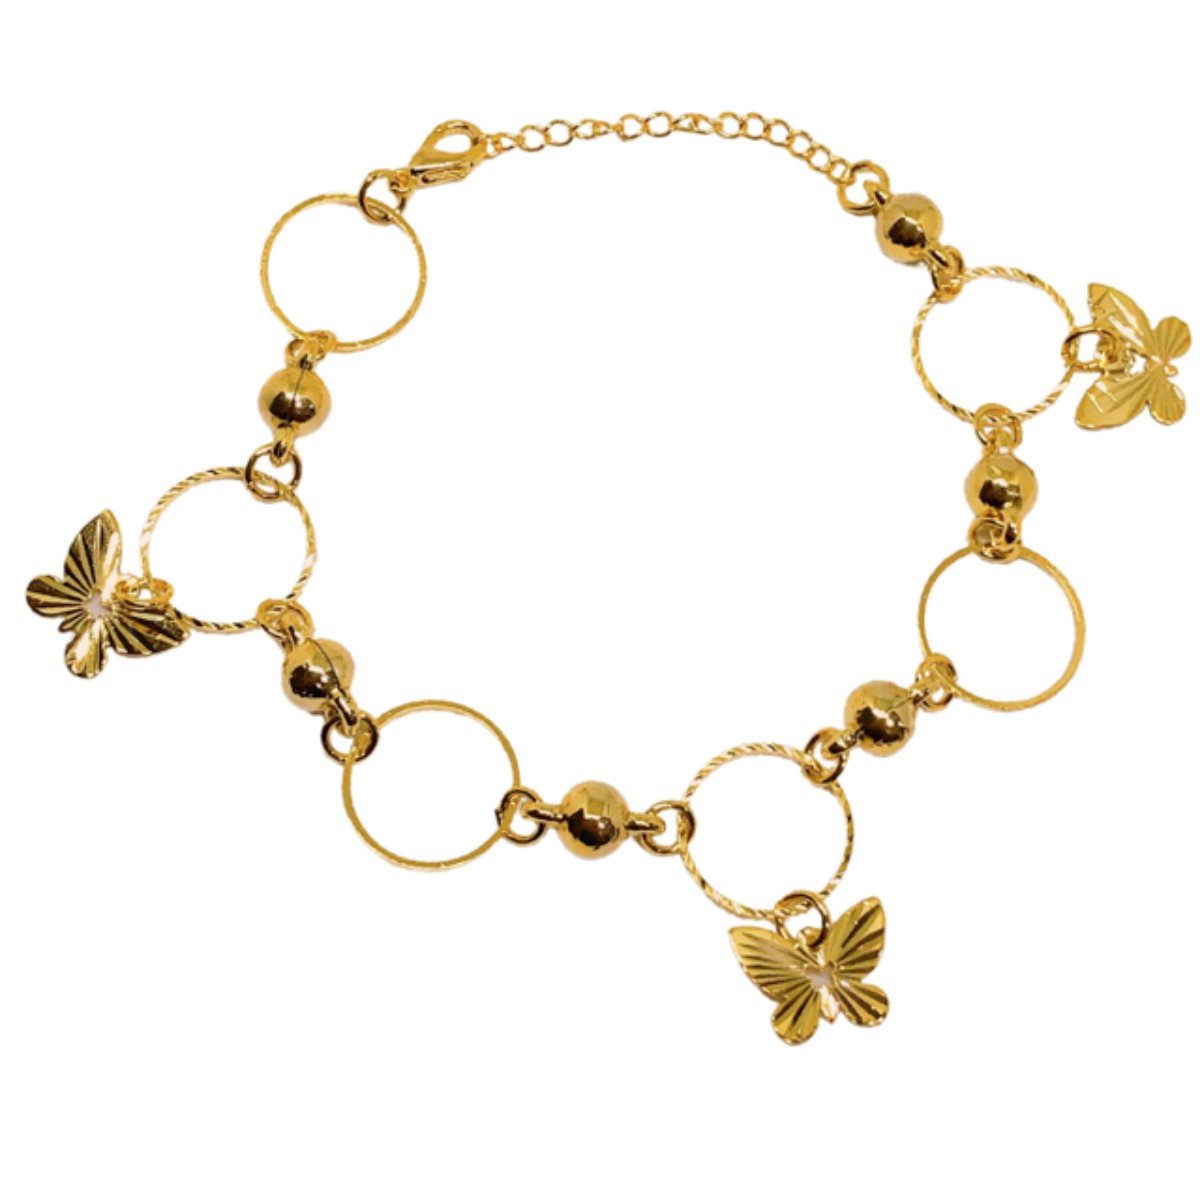 Pulseira dourada com argolas e borboletas